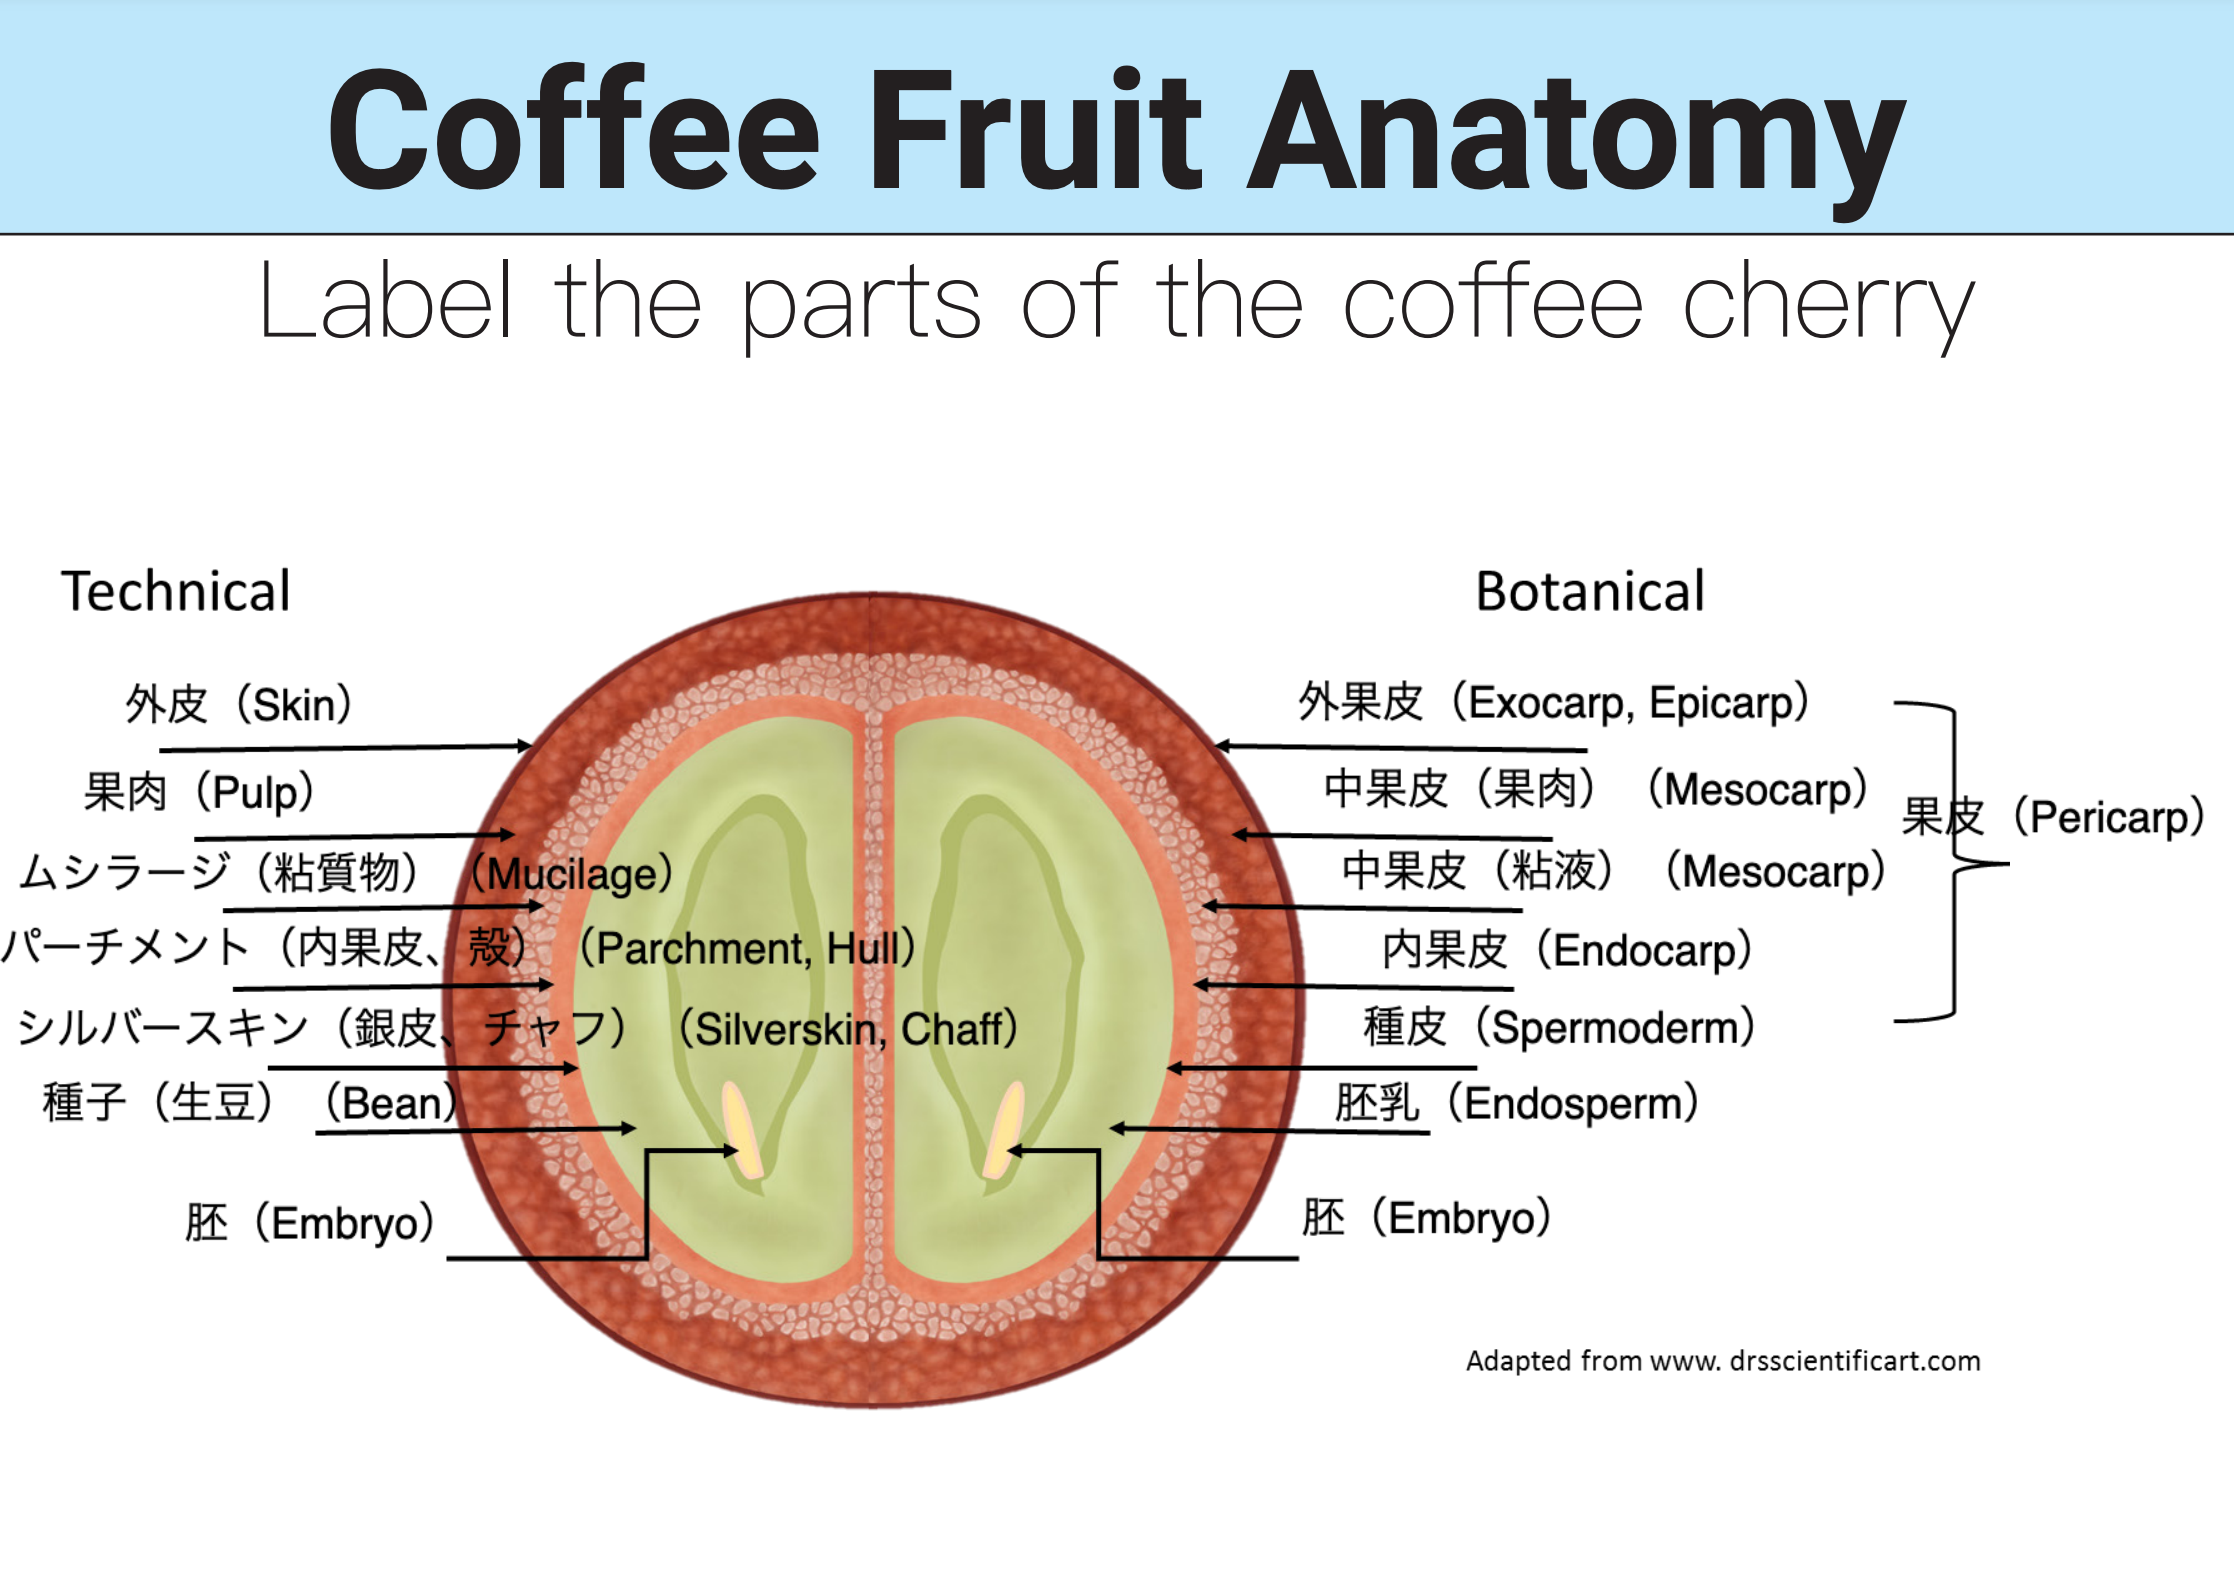 コーヒーの新しい精製方法 ニューナチュラルズ、アナエロビック・ファーメンテーション（嫌気性発酵）、カーボニック・マセレーション